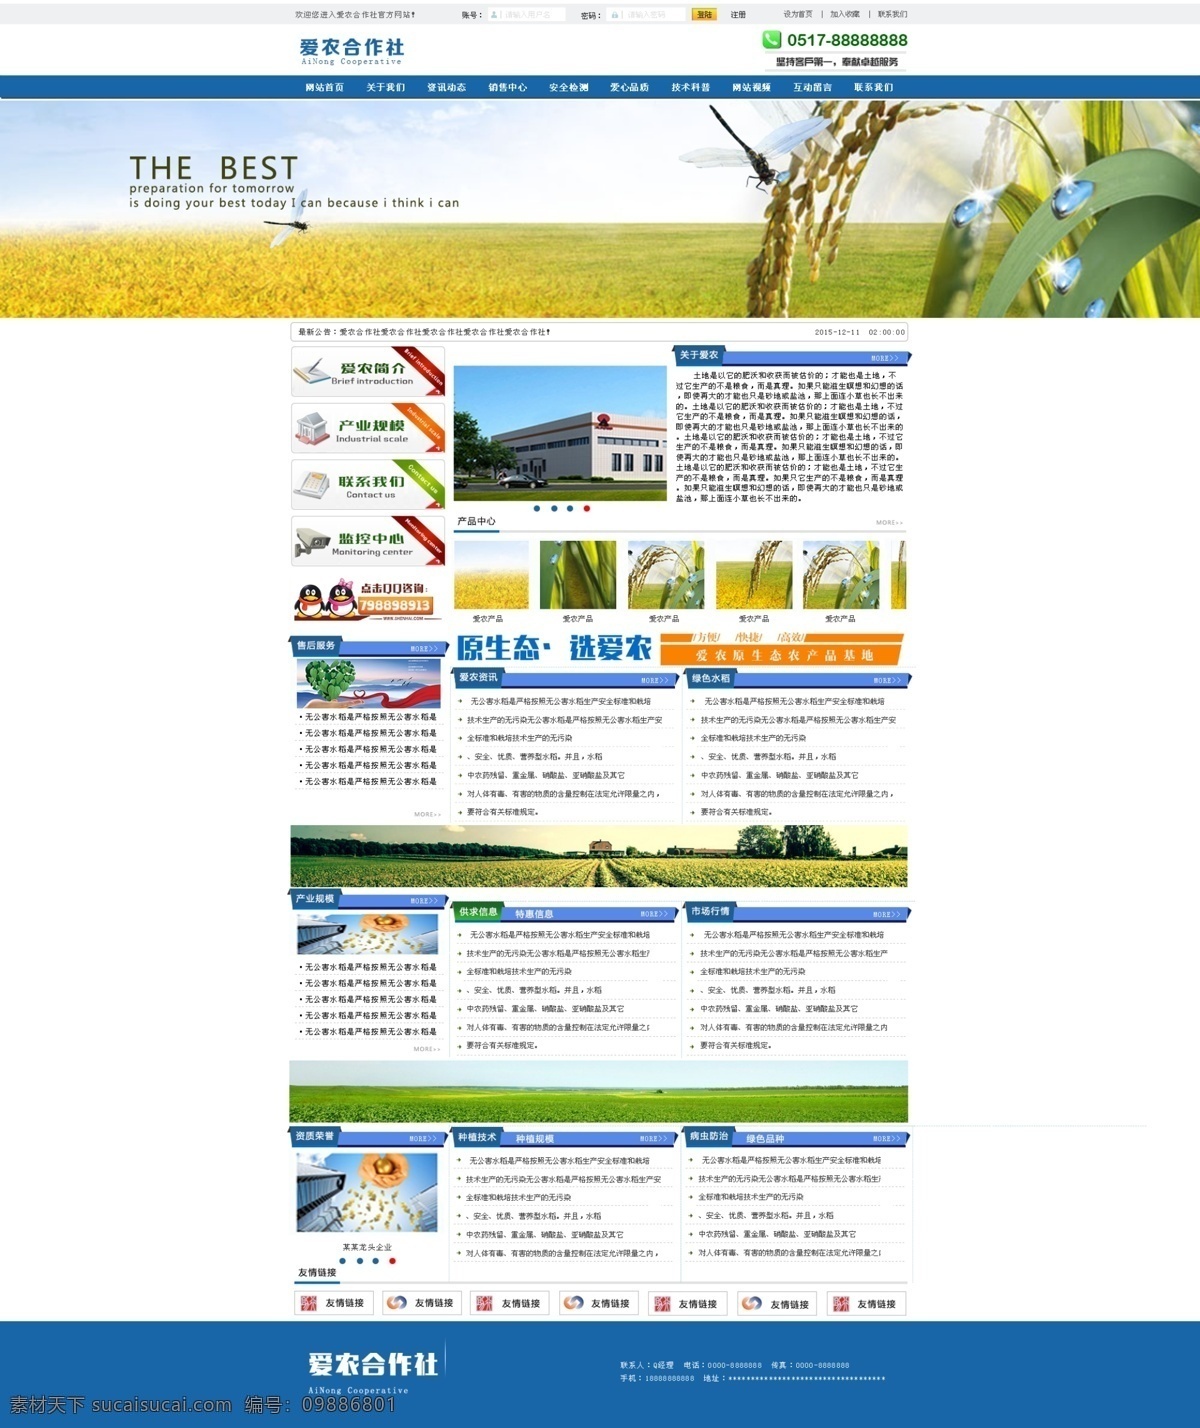 农业网站首页 农业网站 长版 扁平化 公司网站 农业类 web 界面设计 中文模板